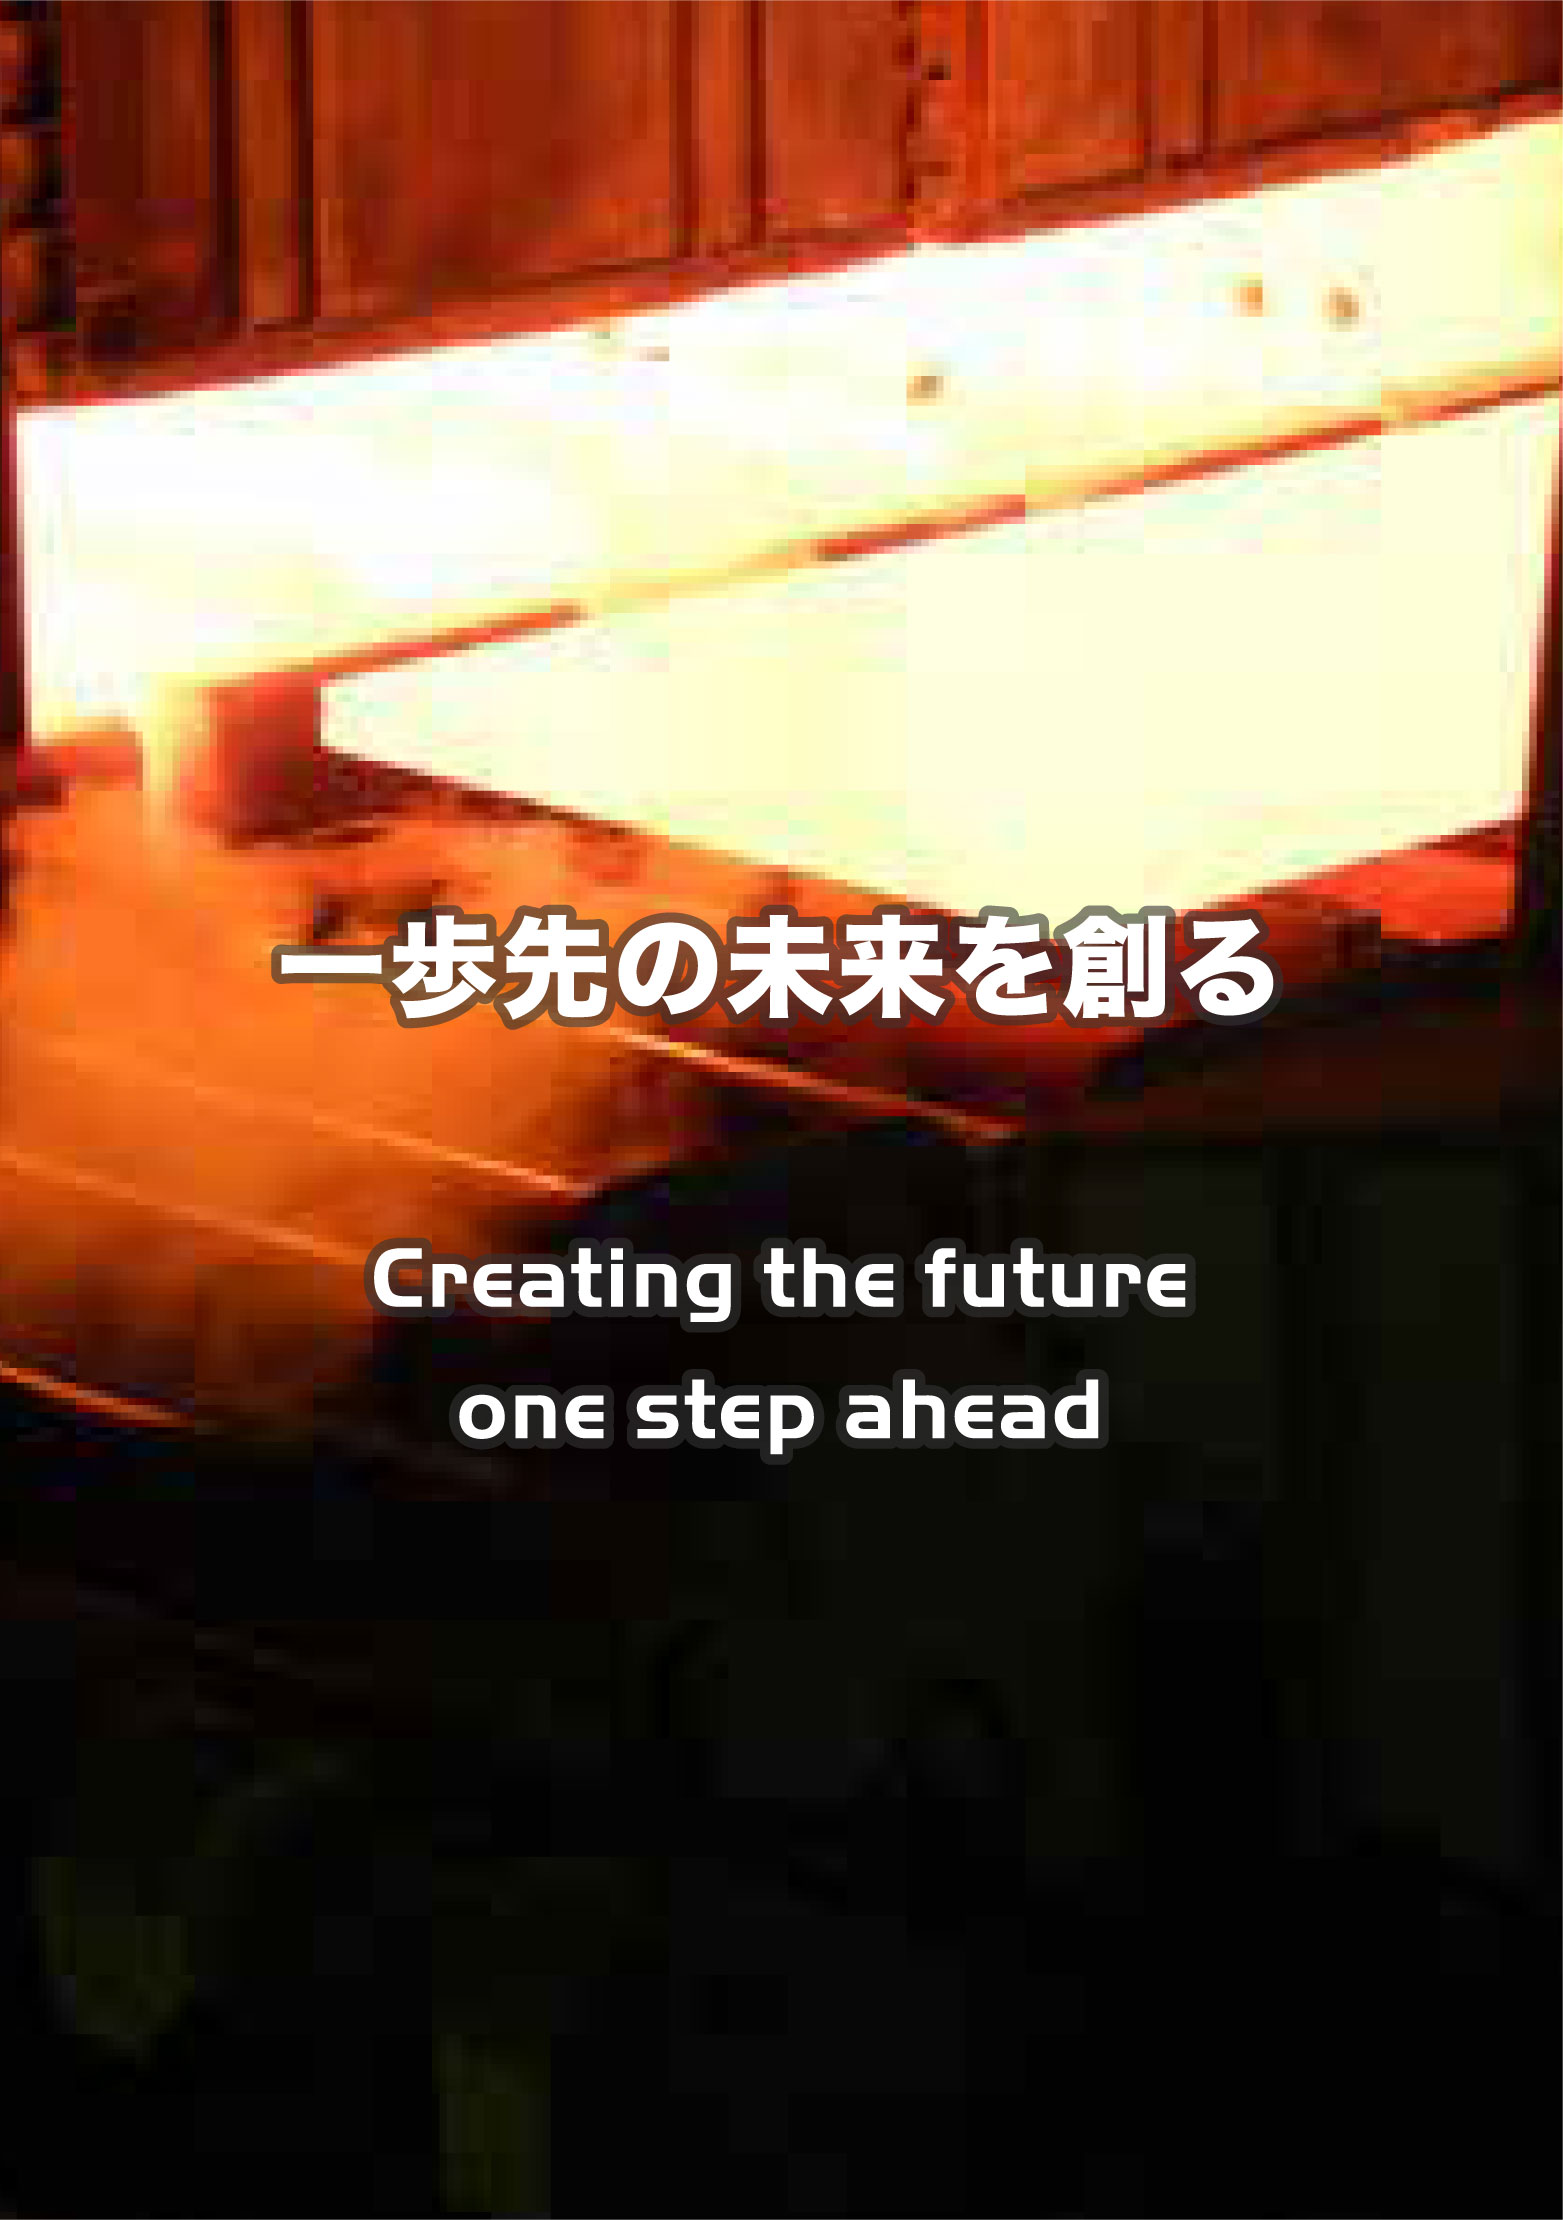 一歩先の未来を創る Creating the future one step ahead